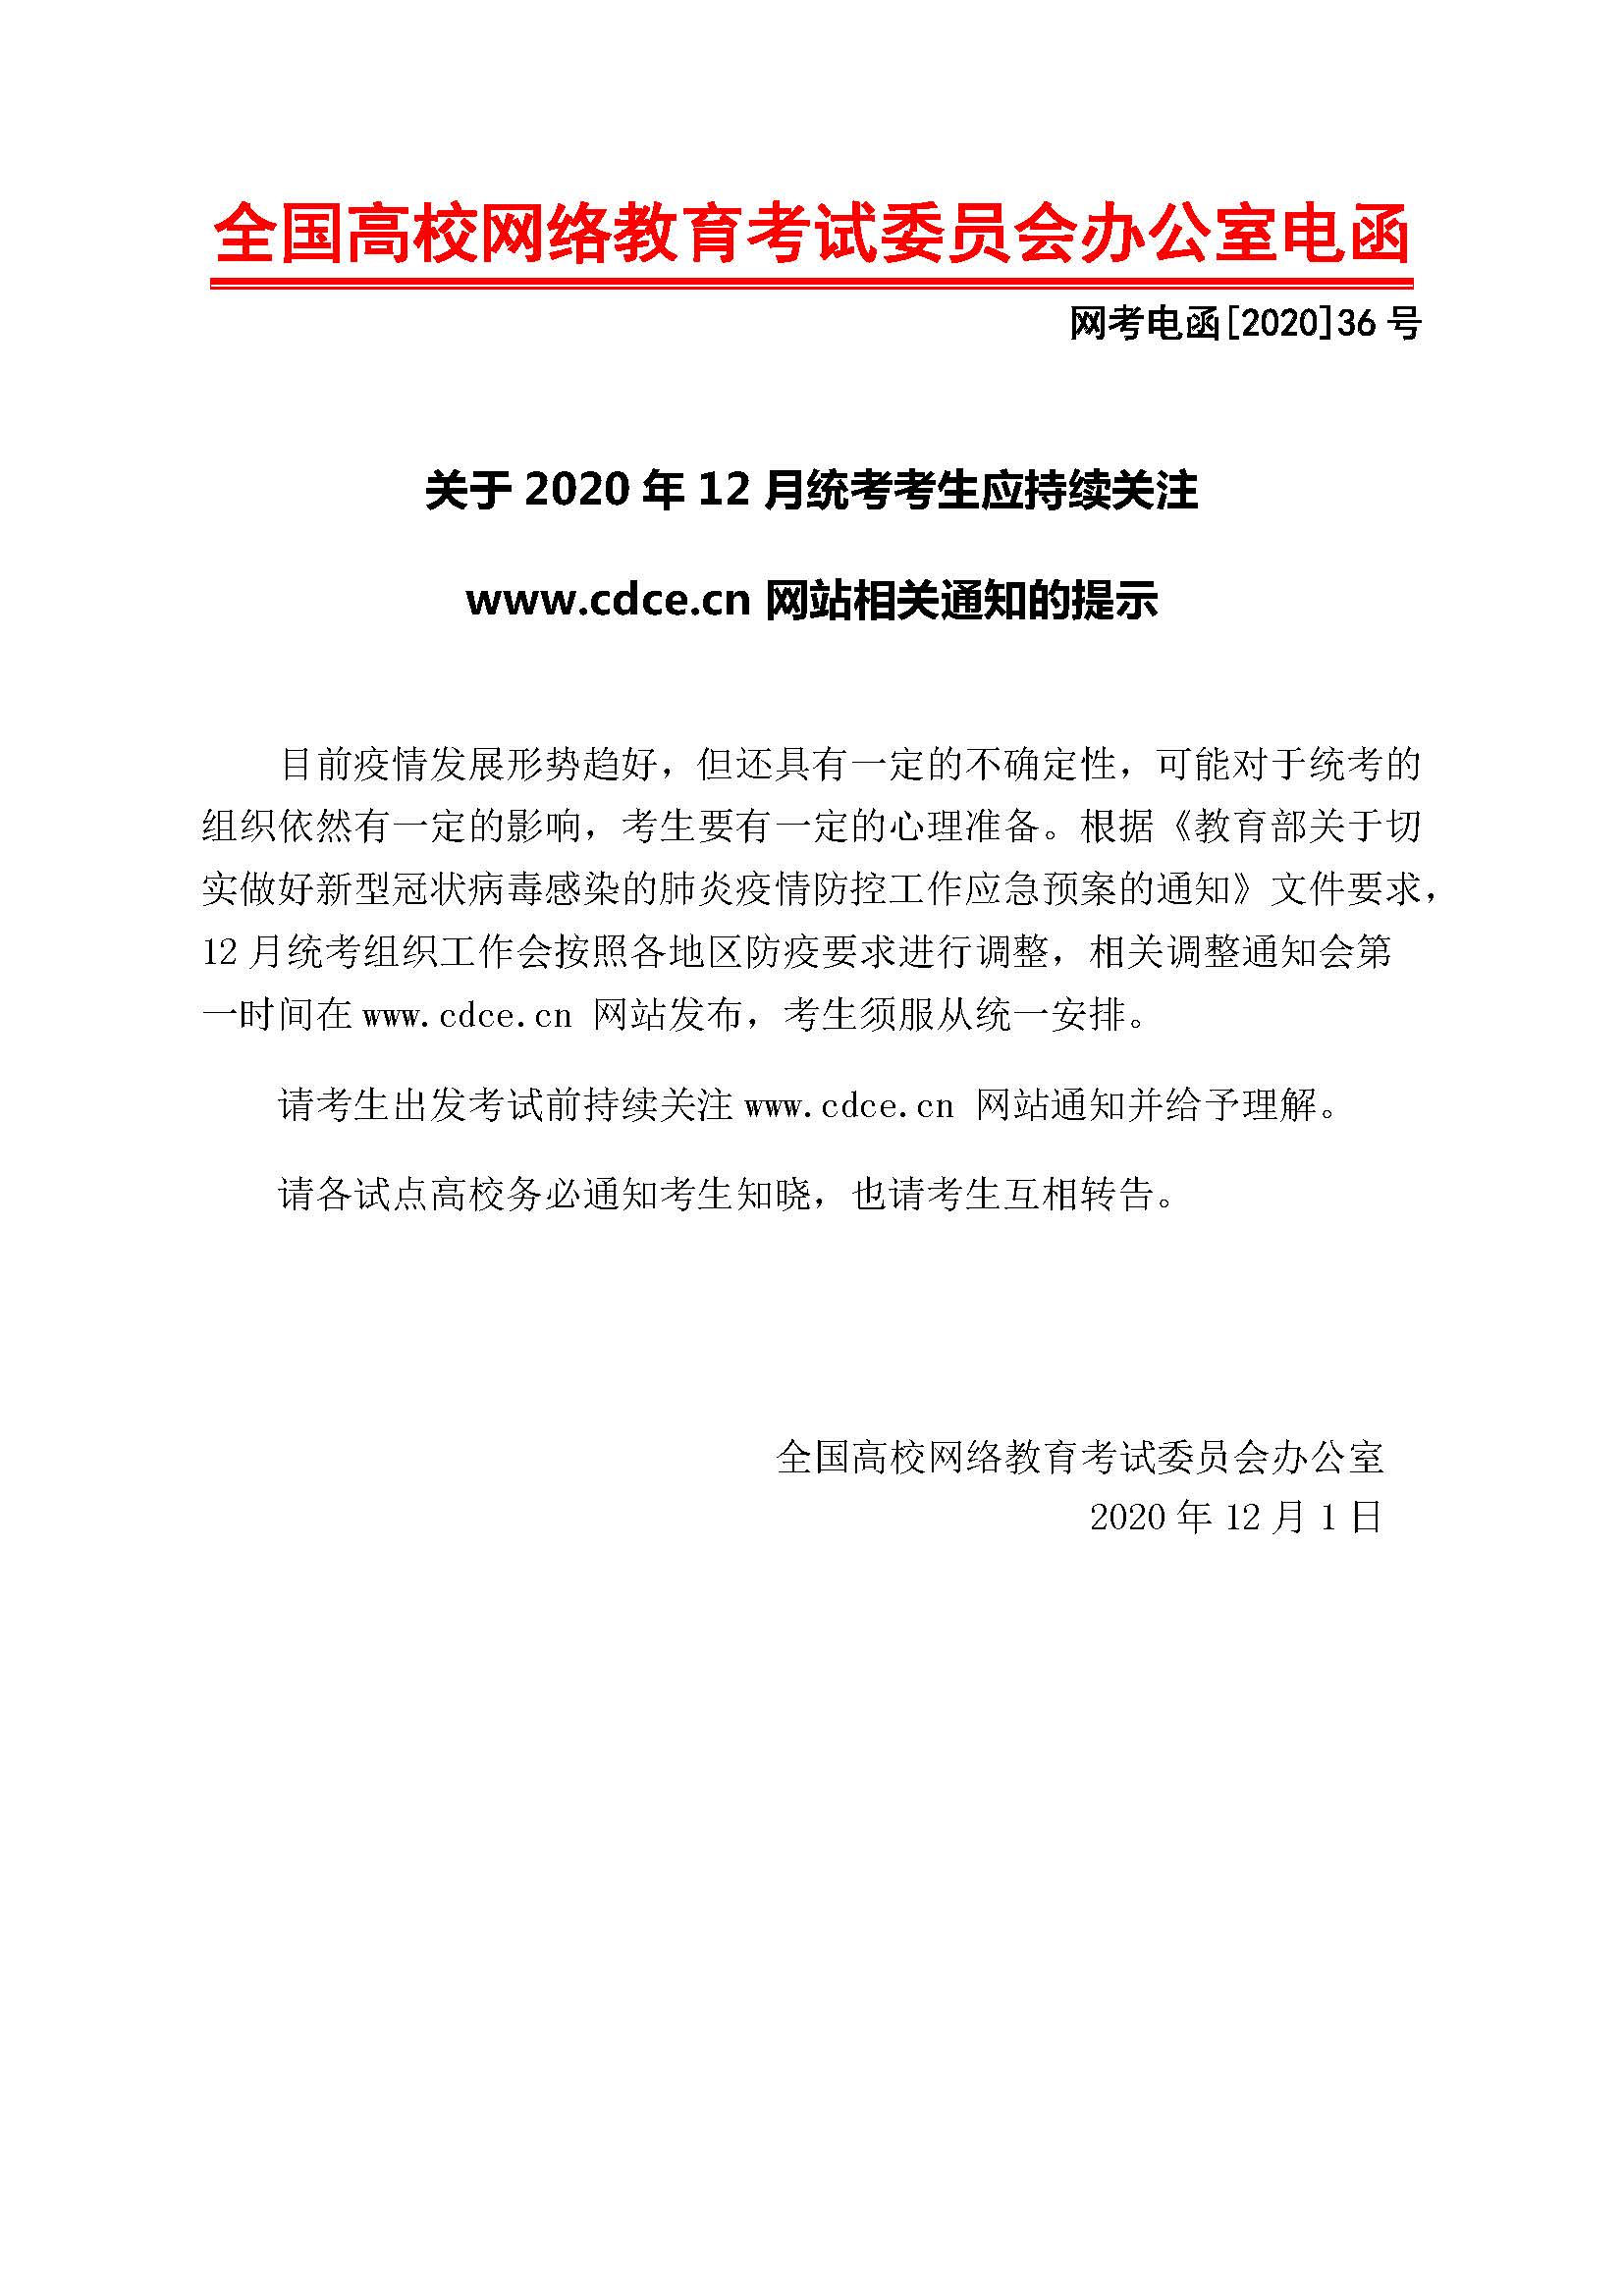 网考电函[2020]36号  关于2020年12月统考考生应持续关注www.cdce.cn网站相关通知的提示.jpg